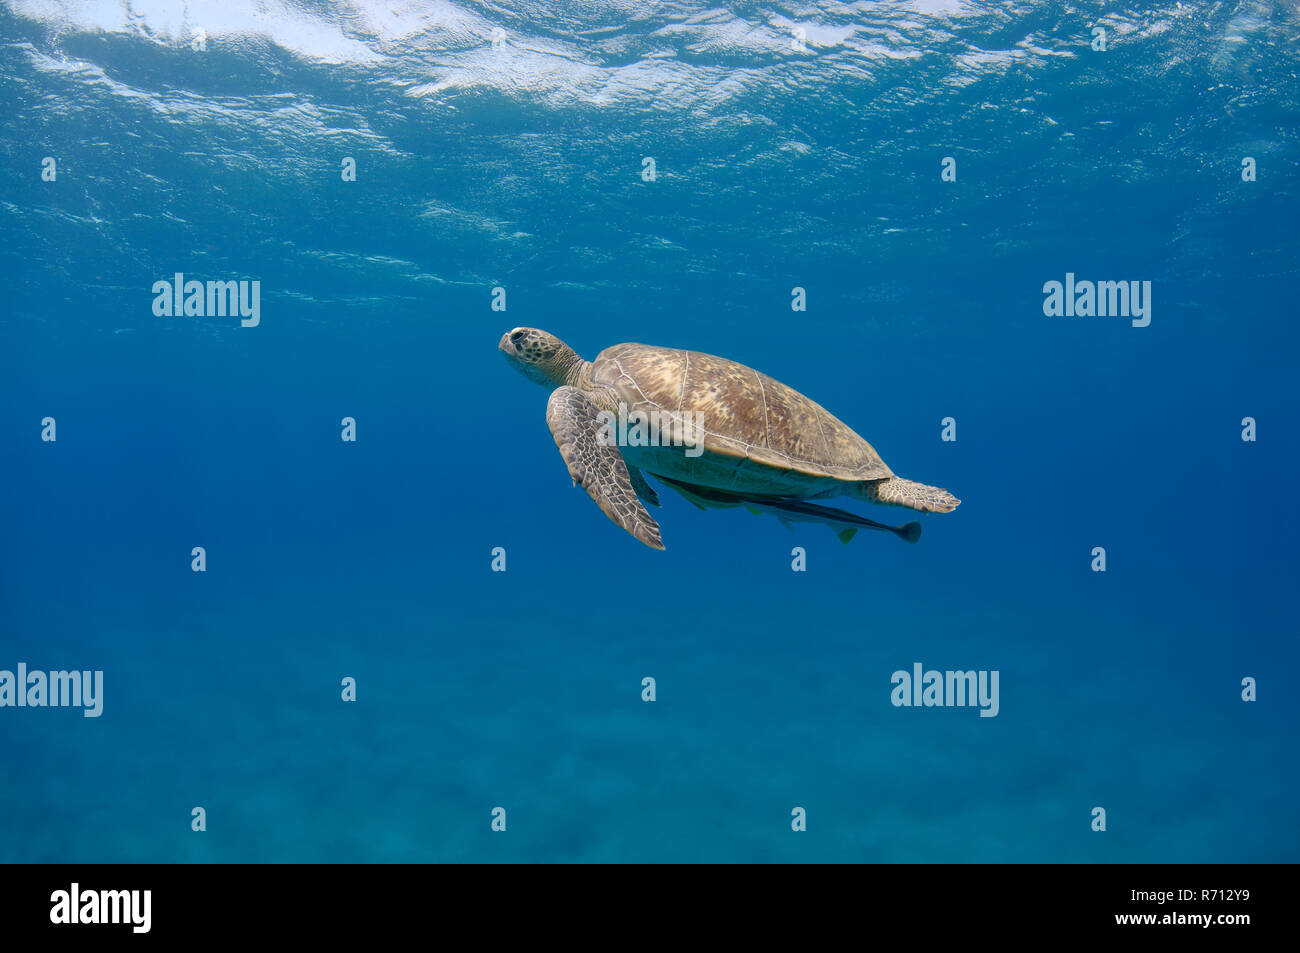 La tortuga verde (Chelonia mydas) nadando hacia arriba en agua azul, Mar Rojo, Marsa Alam, Abu Dabab, Egipto Foto de stock